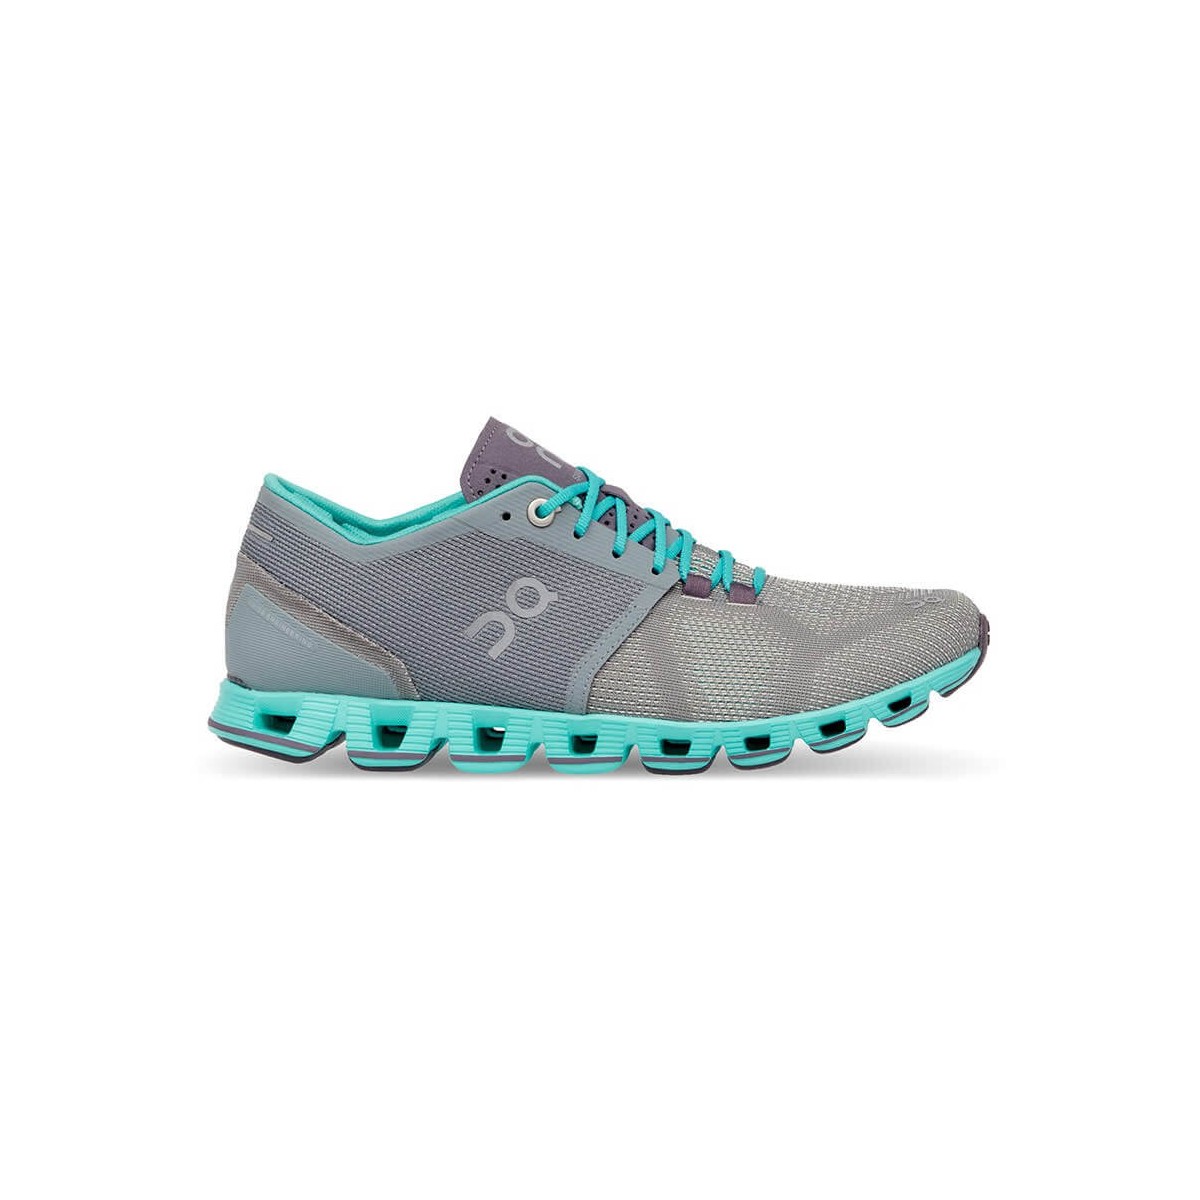 Zapatillas ON Cloud X Grey Atlantis Mujer, Talla 36,5 - EUR